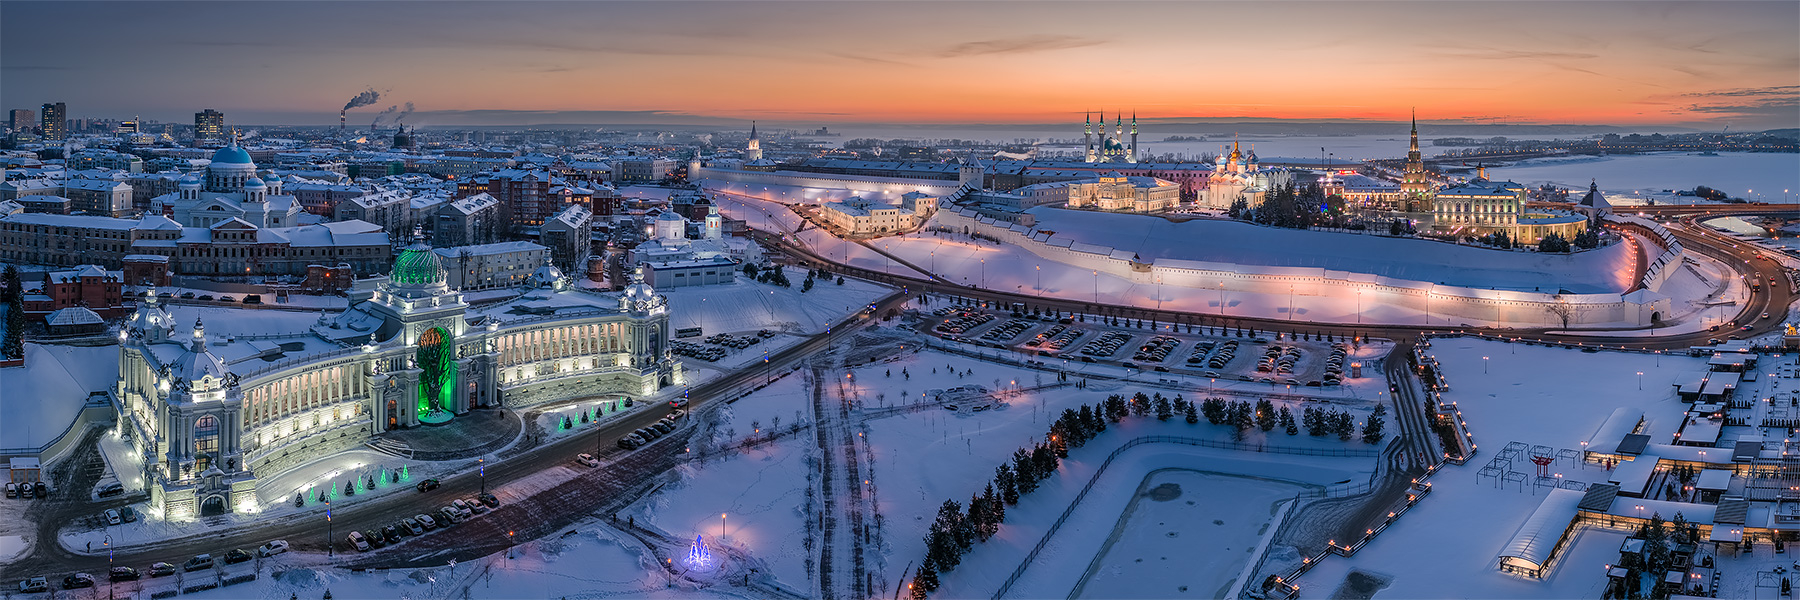 Площадь свободы Казань зима